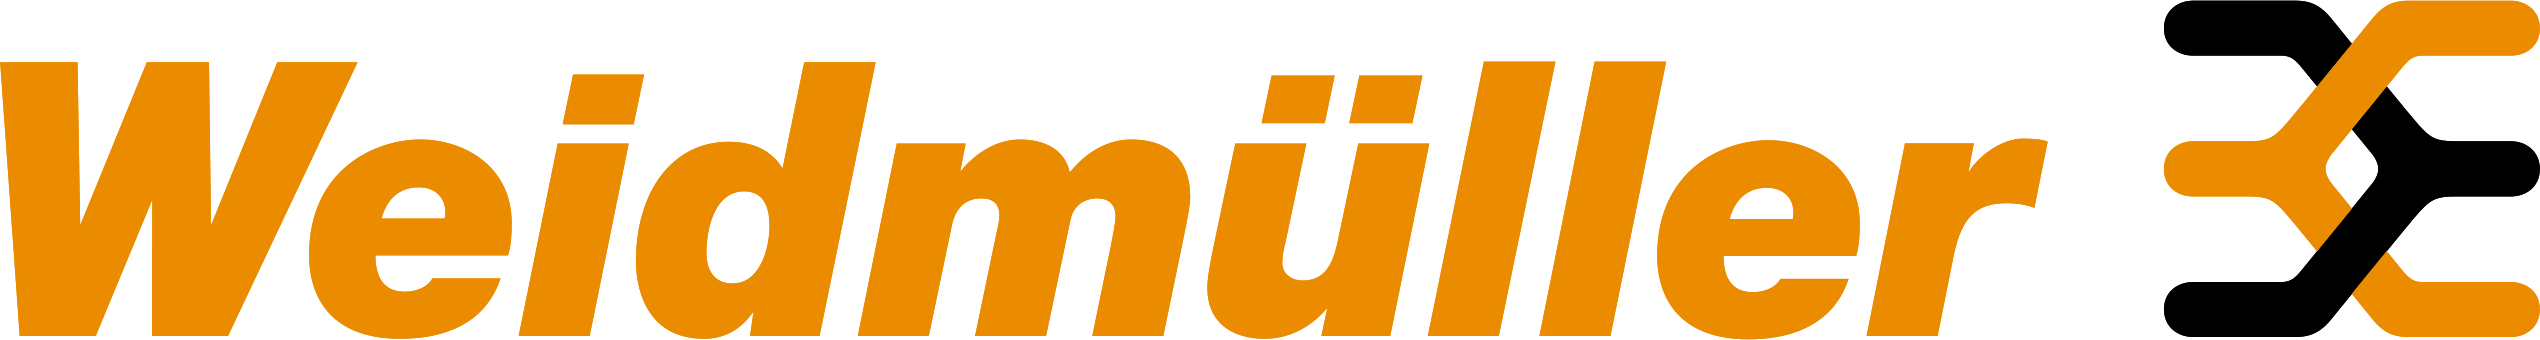 Weidmuller - logo